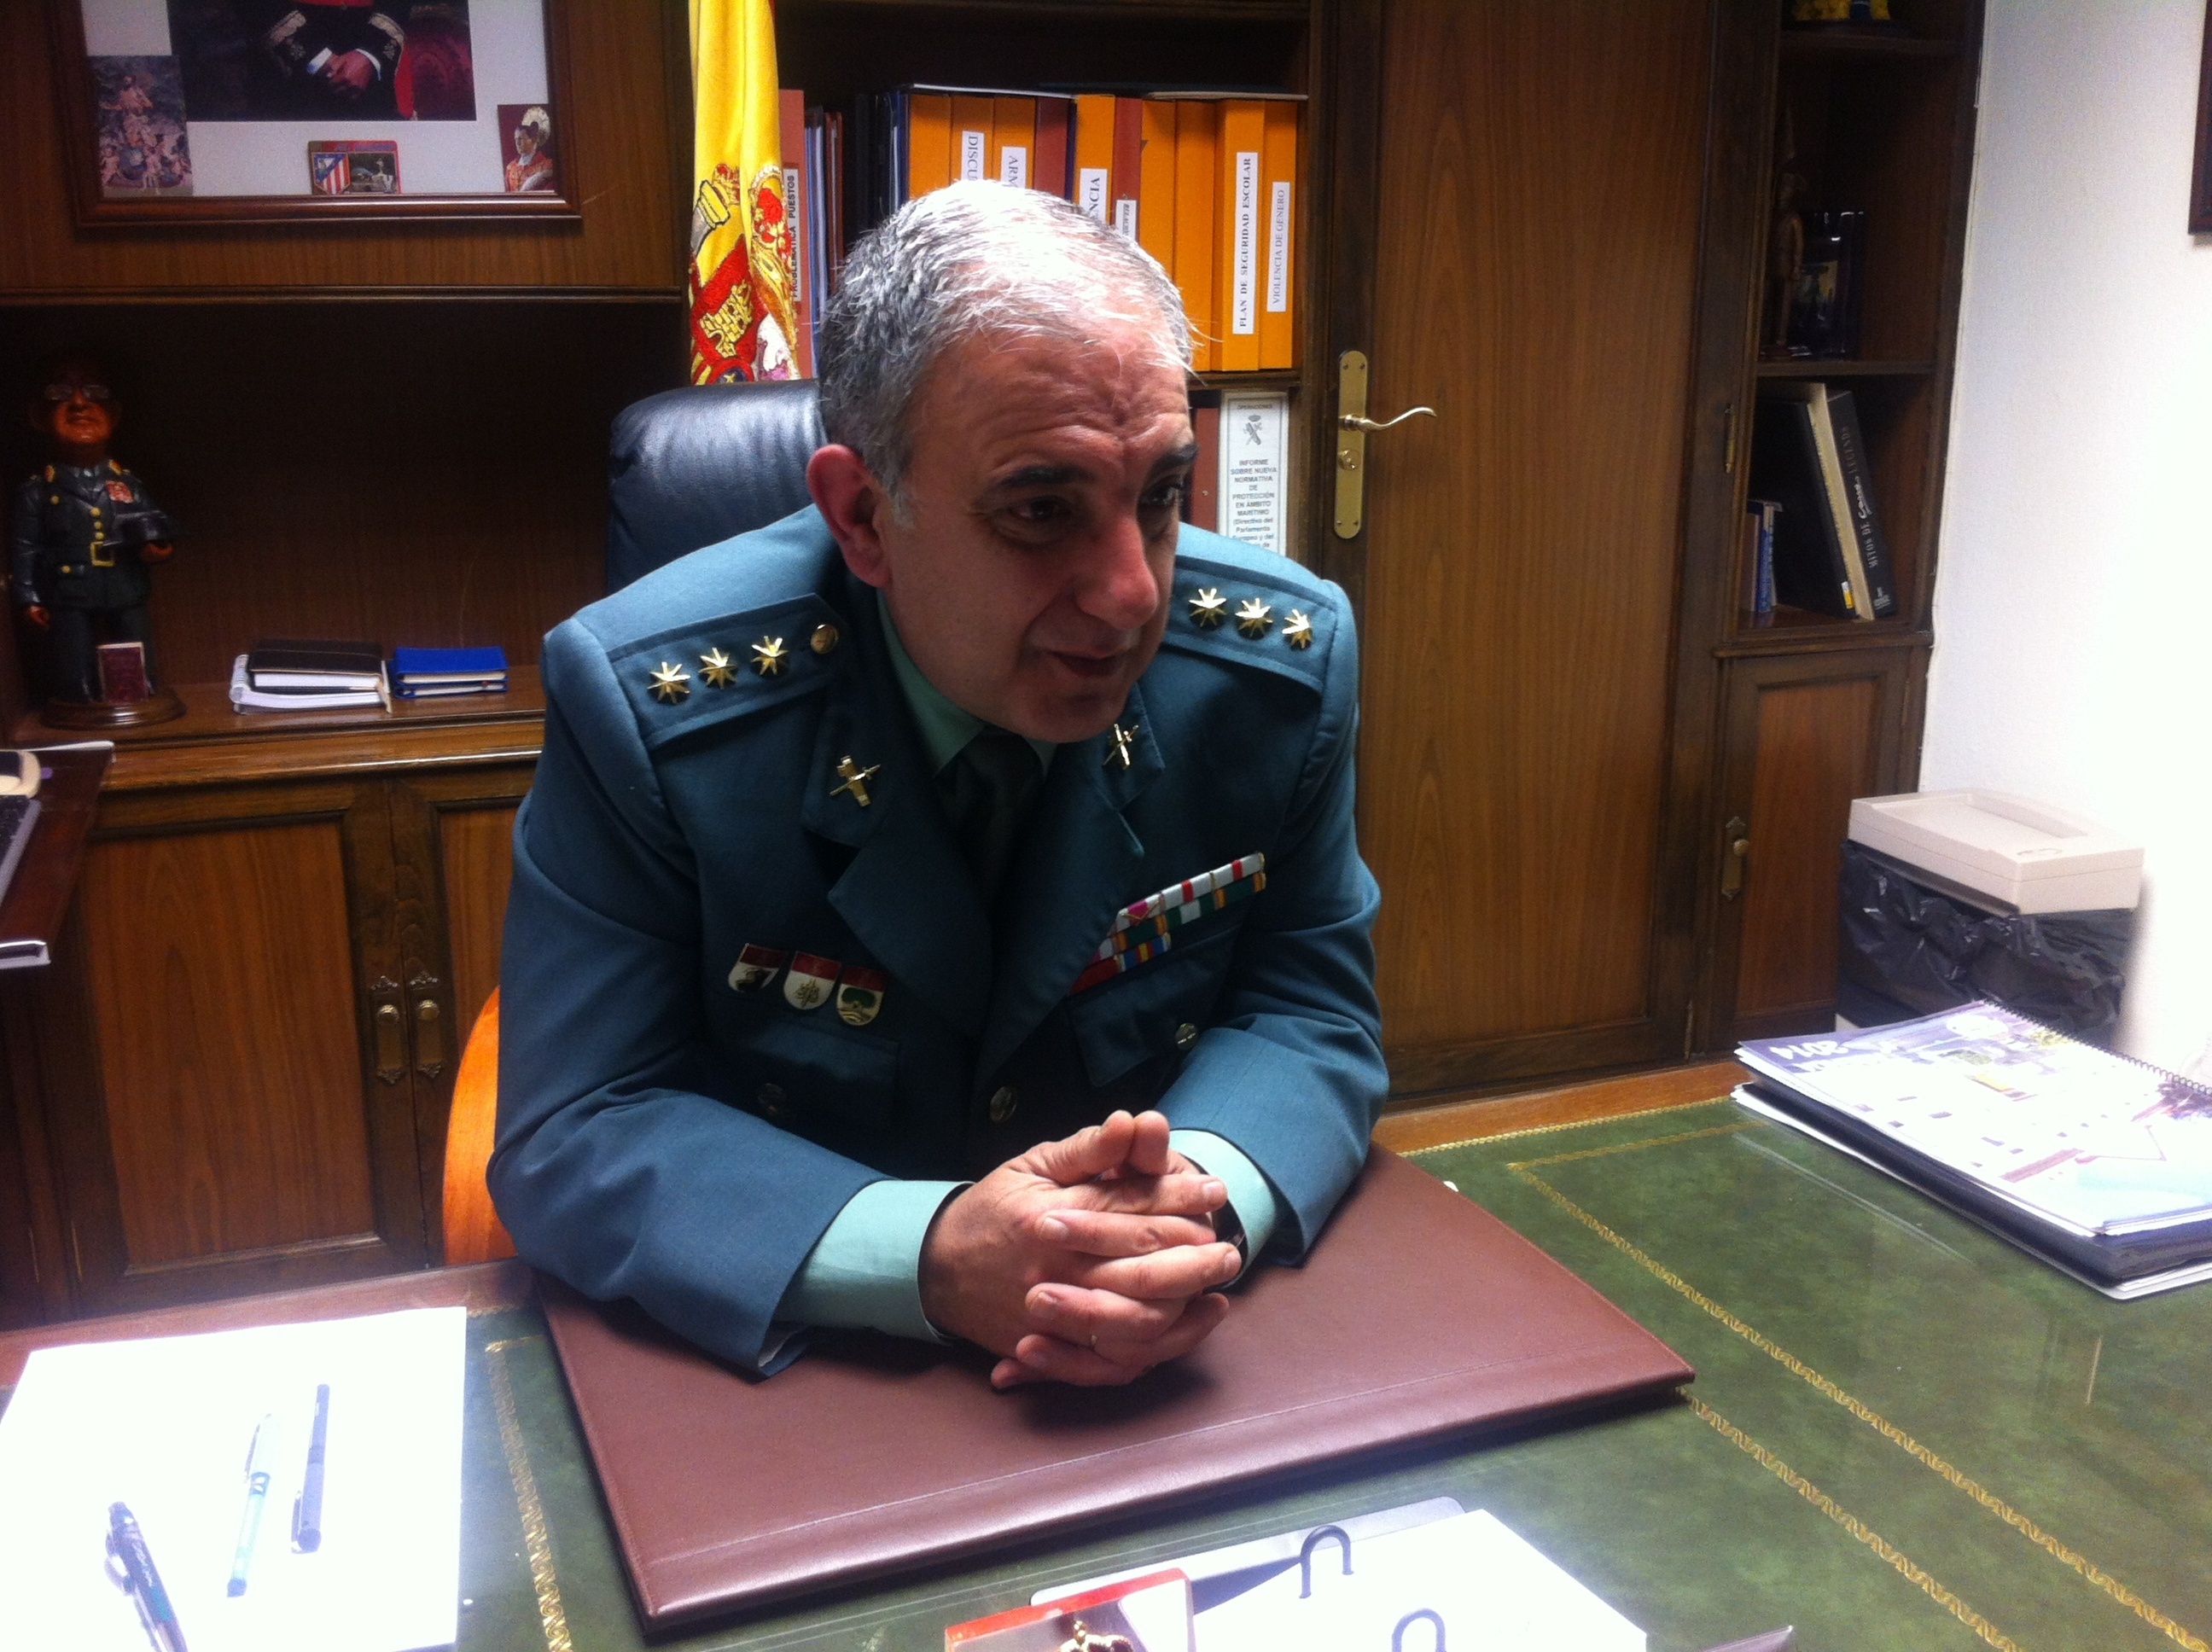 El coronel de la Guardia Civil espera mejorar cuarteles en 2014 y dice que le gustaría tener más presupuesto